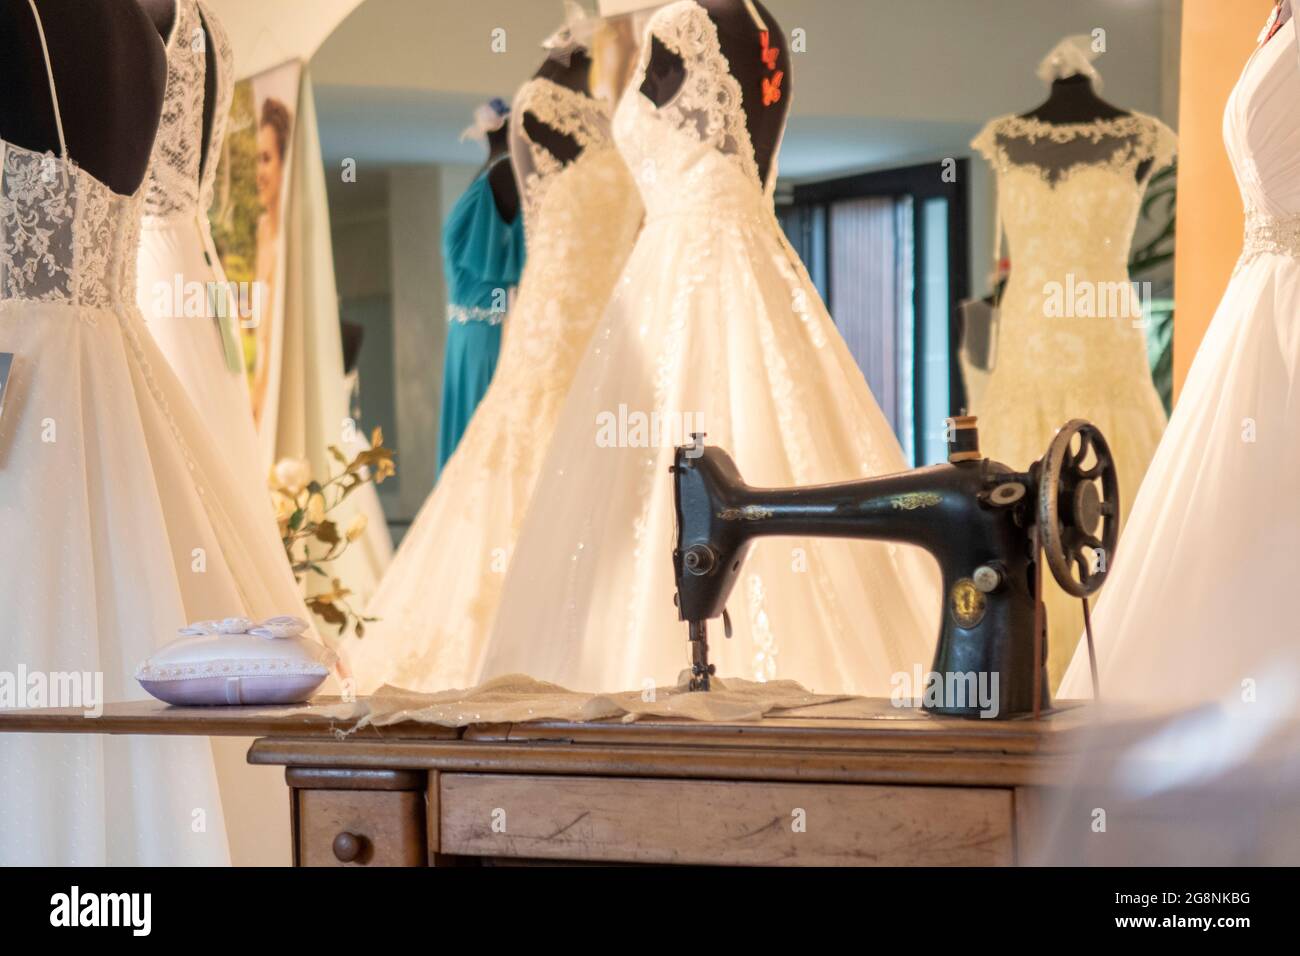 Detalle de sastrería para vestidos de novia con una máquina de coser y ropa  blanca. No hay personas visibles, el fondo está borroso Fotografía de stock  - Alamy